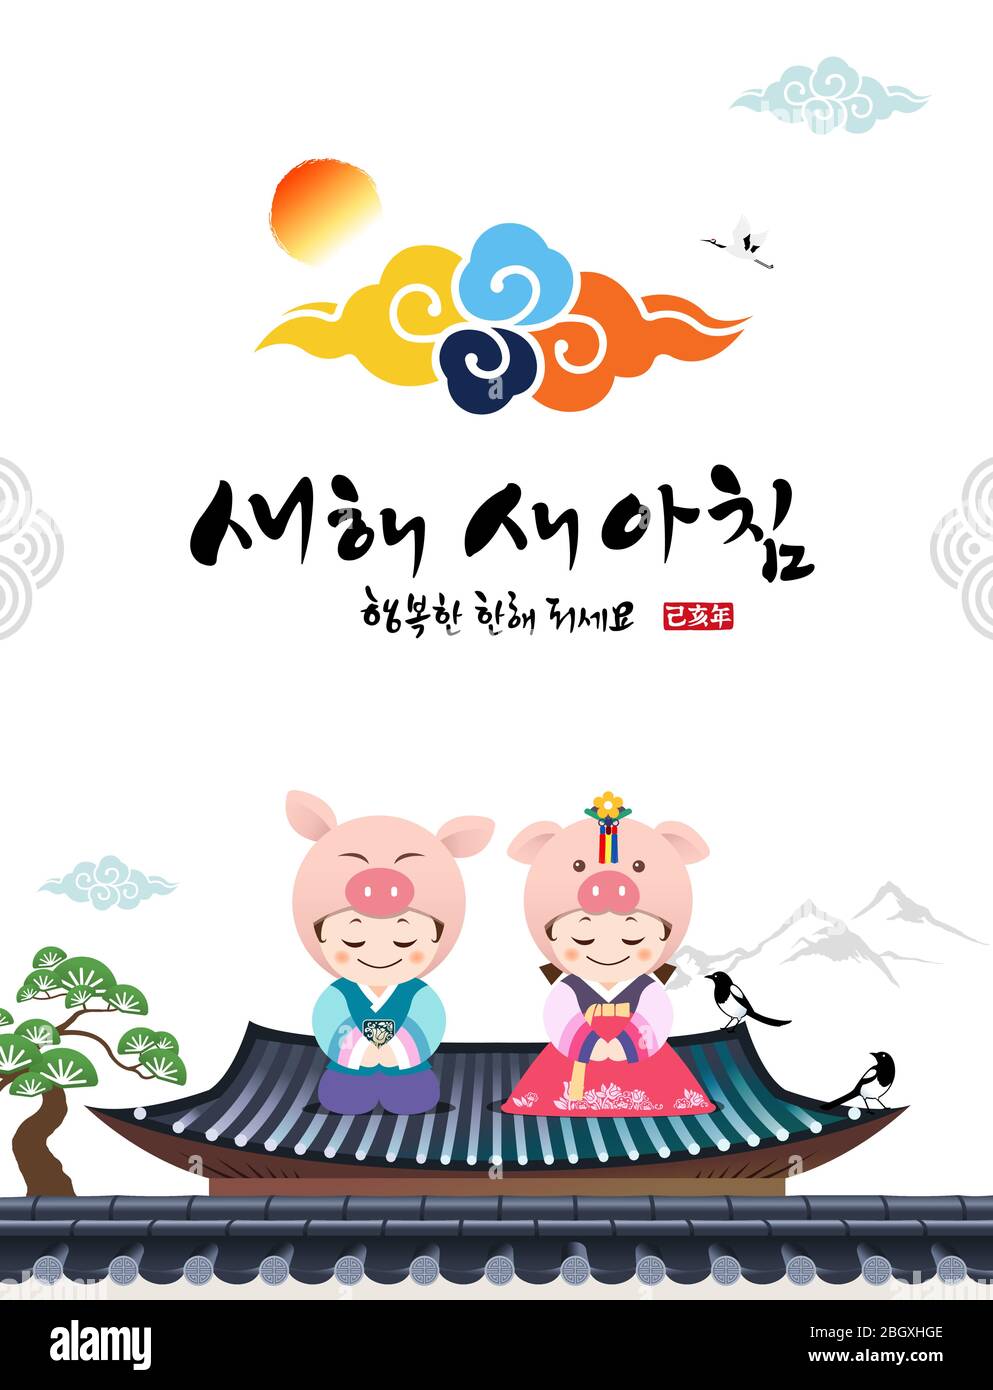 Frohes neues Jahr, Übersetzung des Koreanischen Textes: Frohes neues Jahr, Kalligraphie und koreanische traditionelle Kinder begrüßen. Stock Vektor